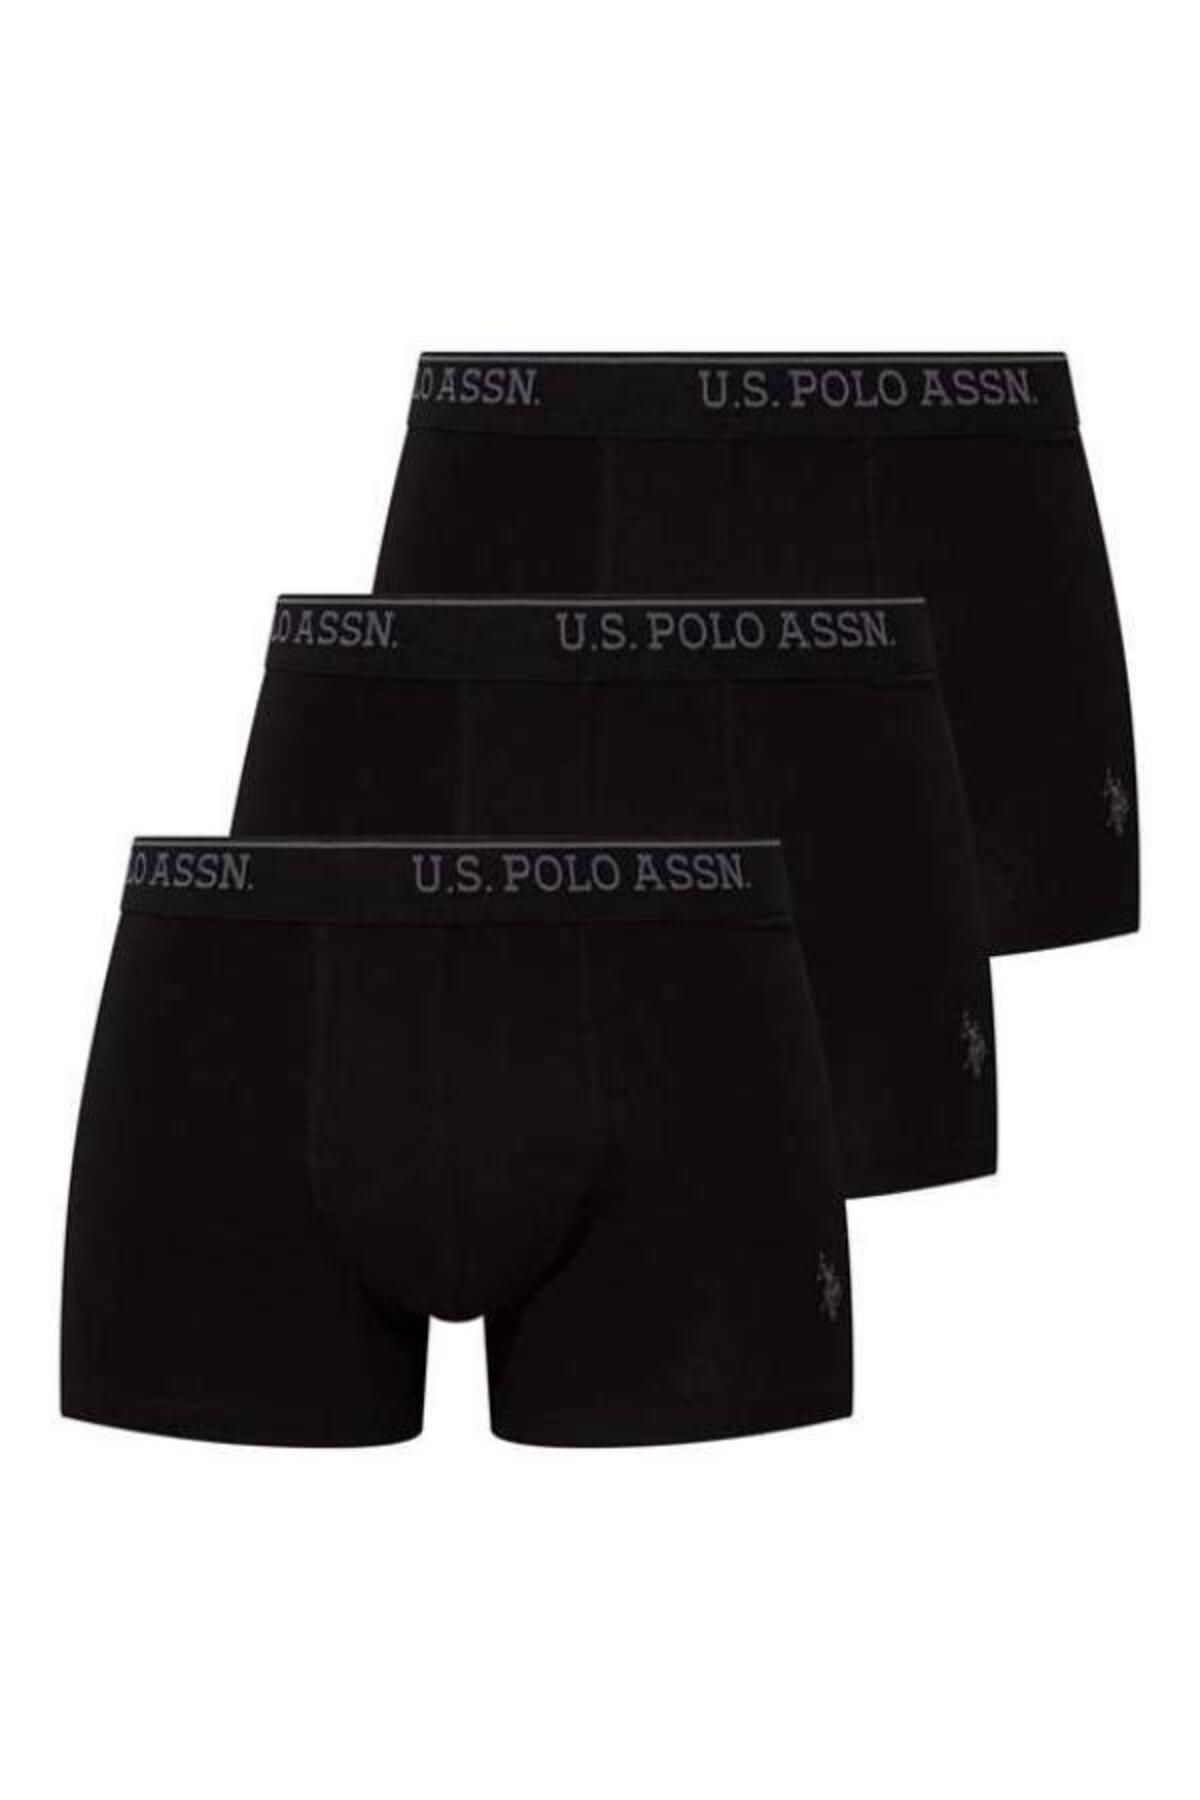 U.S. Polo Assn. U.S. Polo Assn. Erkek İç Giyim Siyah Regular 3'lü Boxer Set L.2.0.1.L.0.58